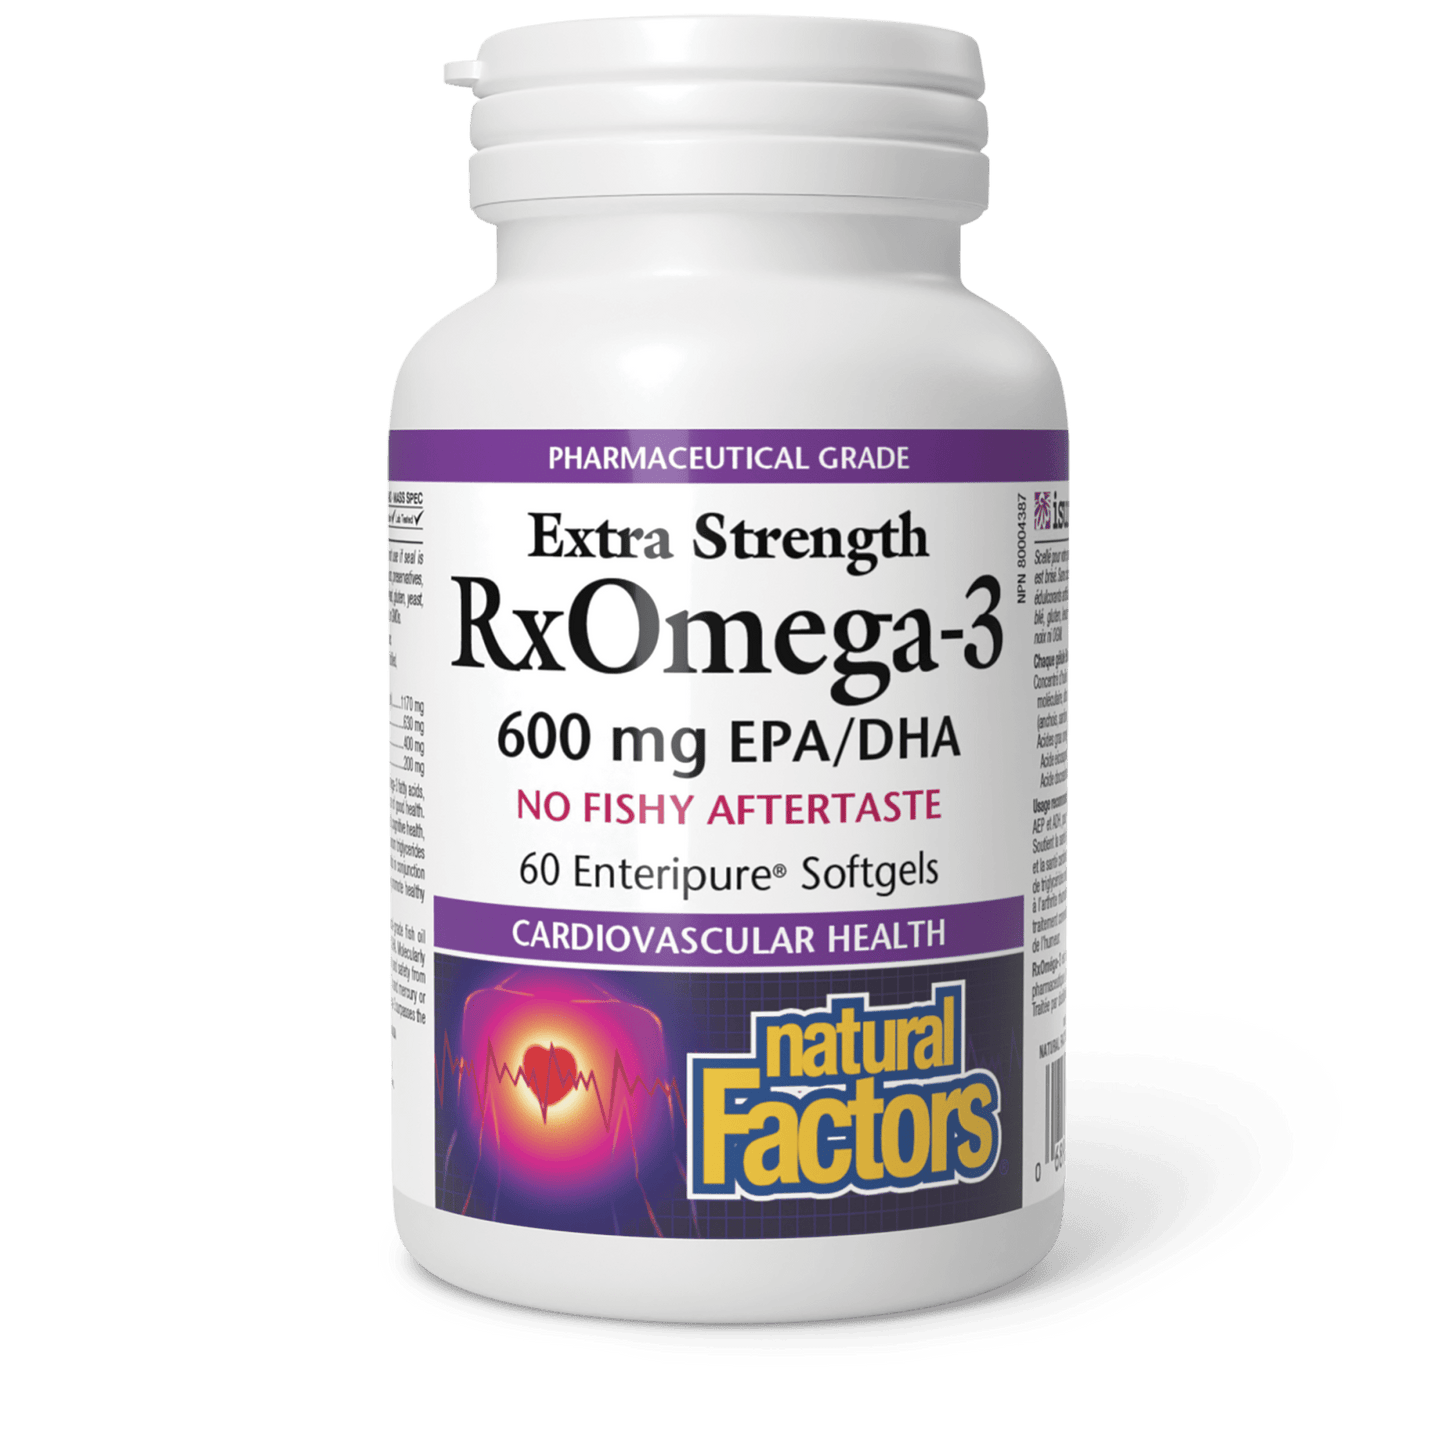 RxOmega-3 Extra Strength 600 mg, Natural Factors|v|image|3548